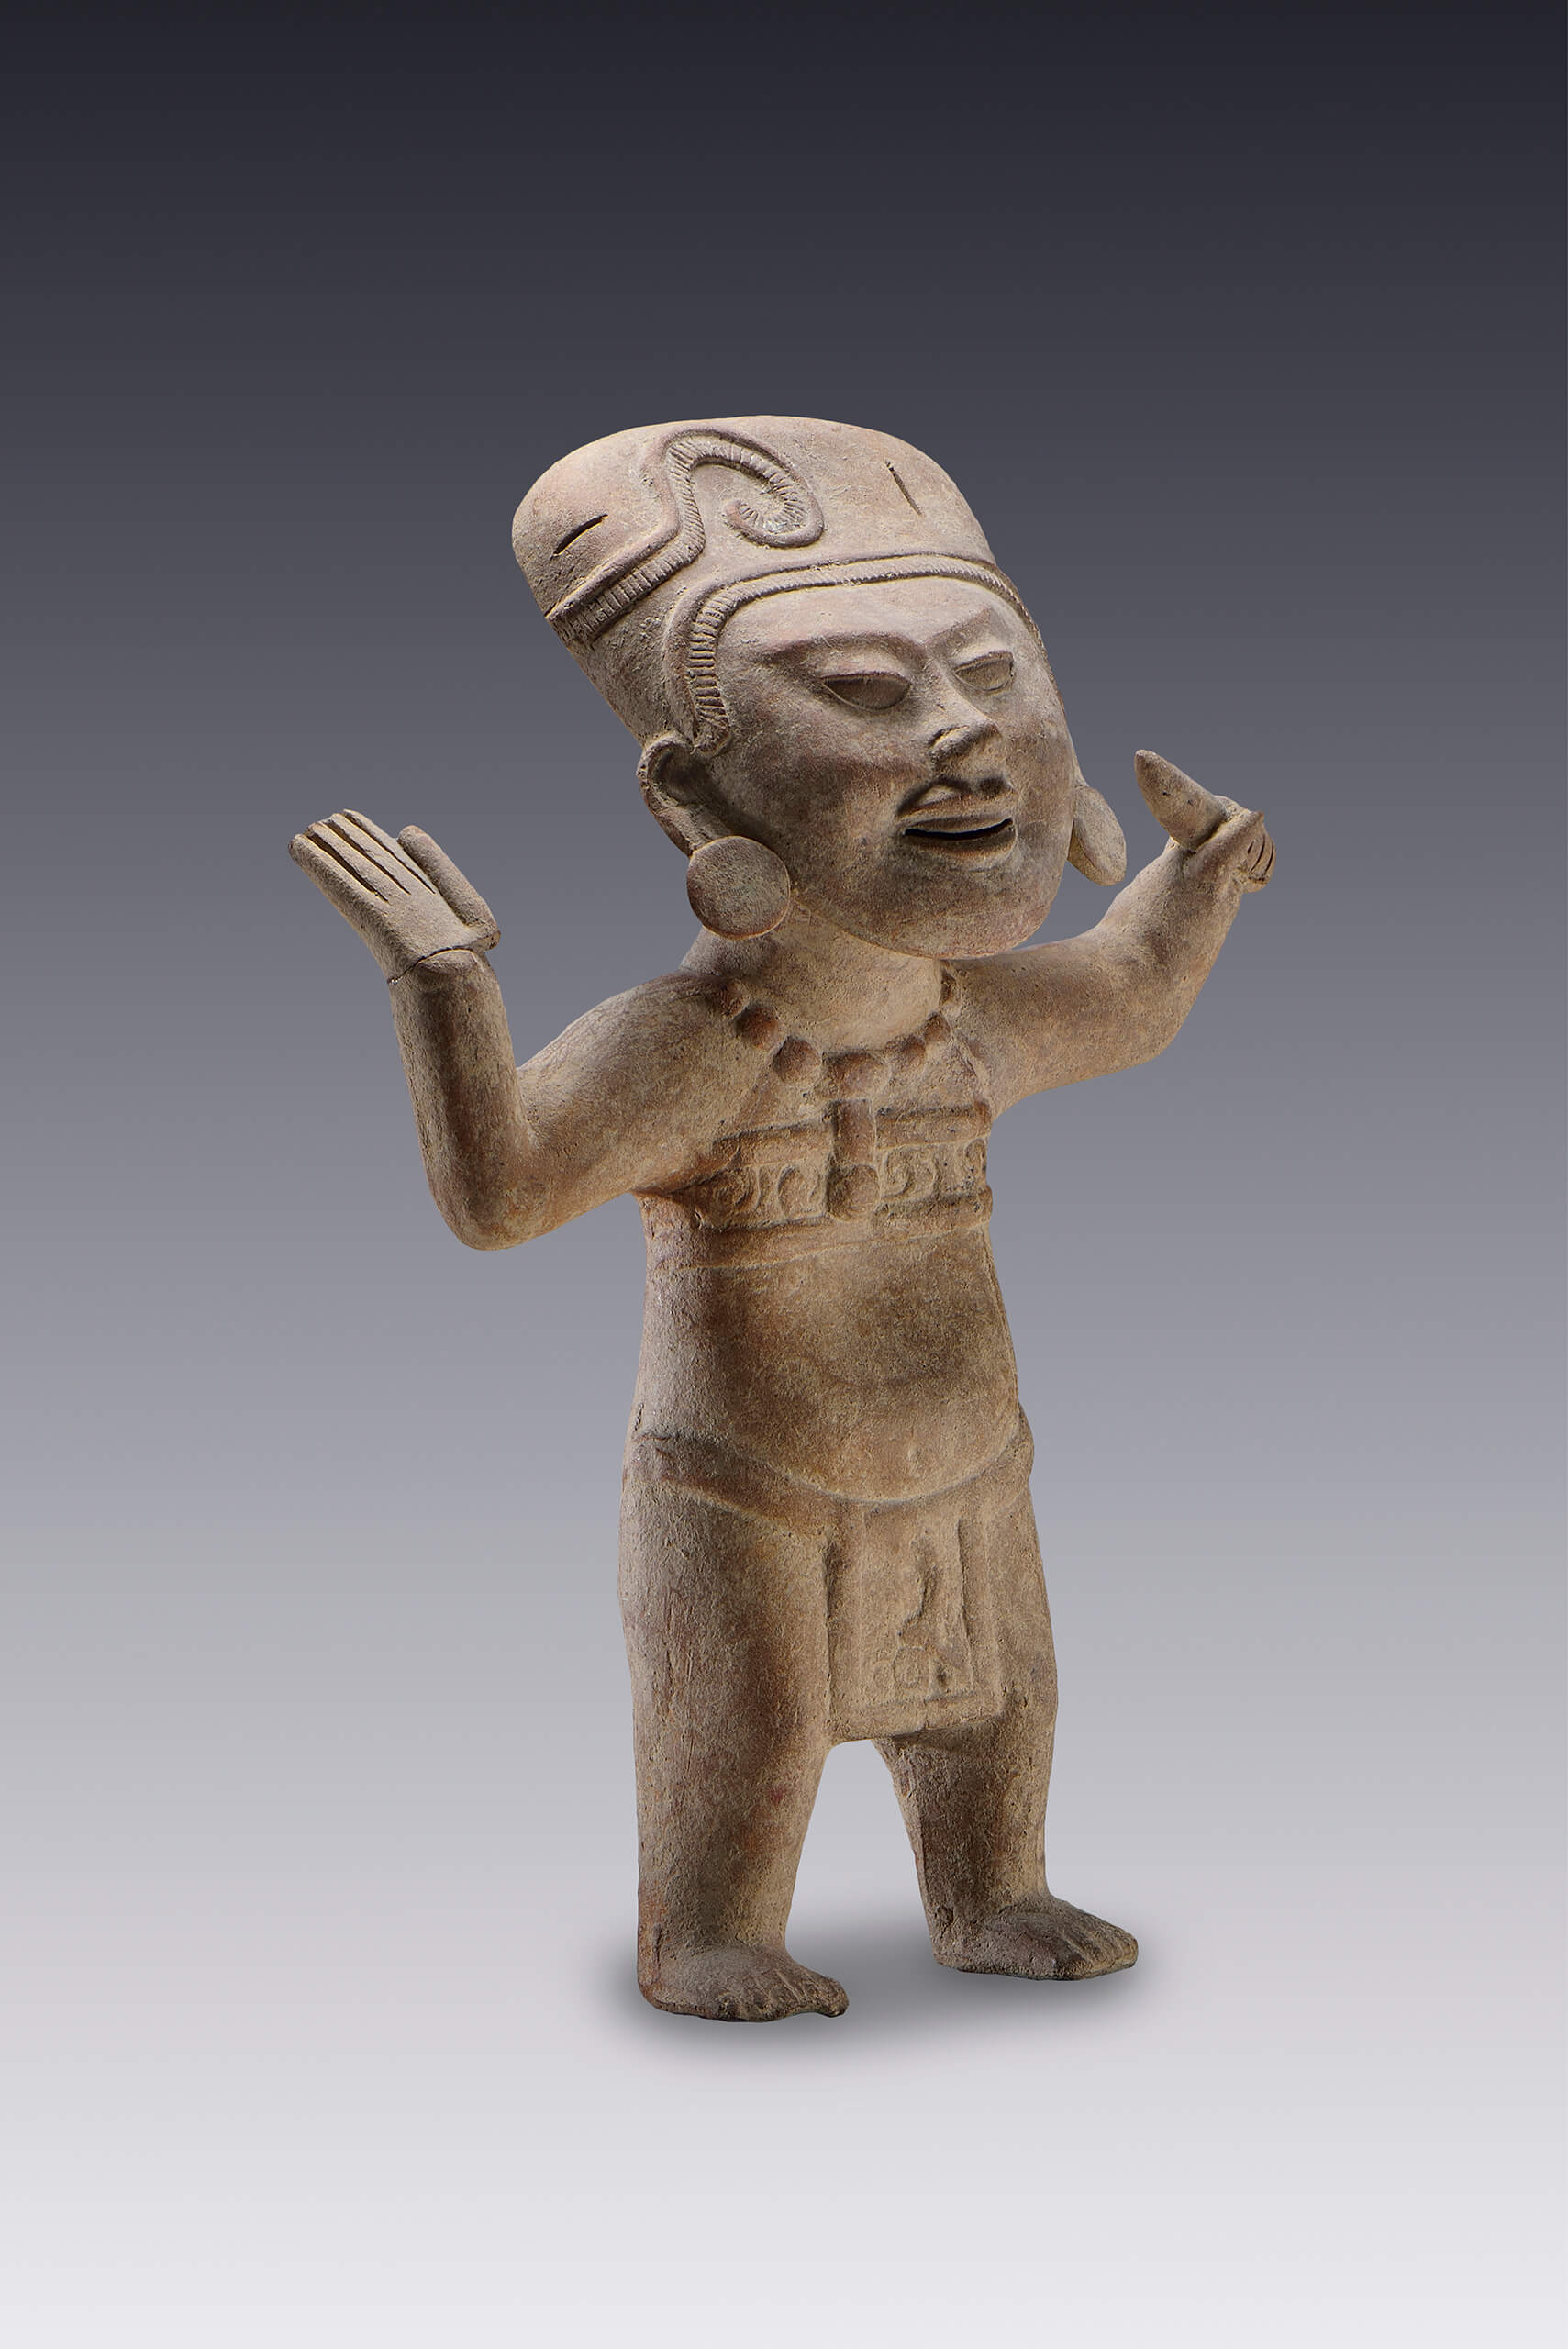 Figura de una persona que realiza ademanes de alegría | El México antiguo. Salas de Arte Prehispánico | Museo Amparo, Puebla